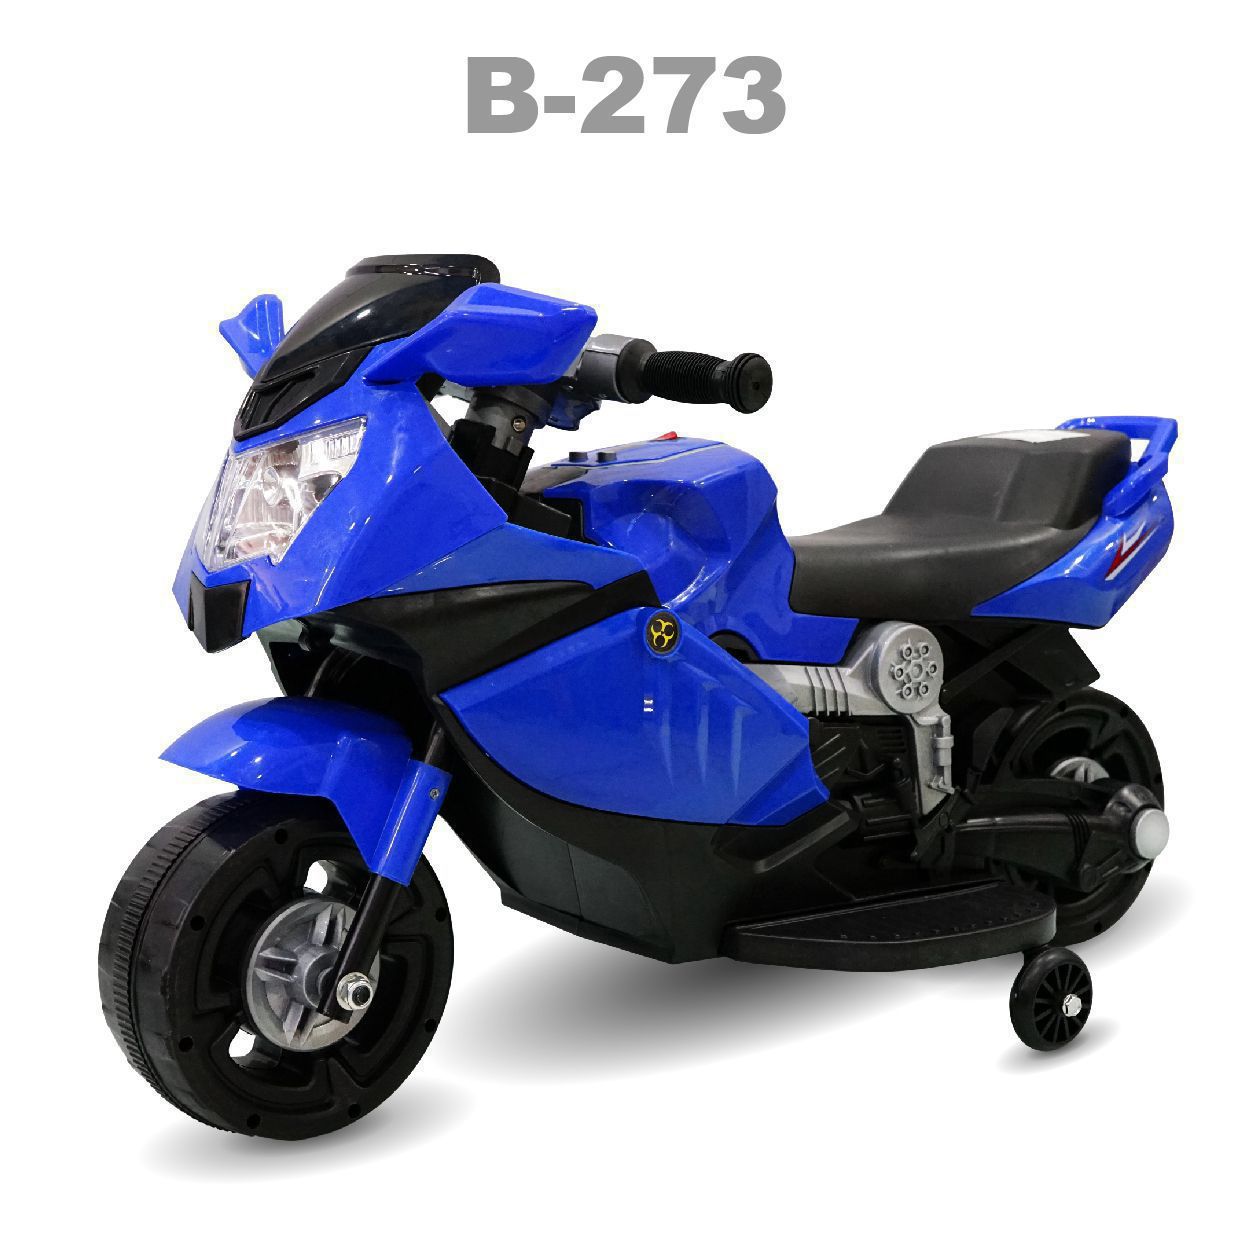 Xe mô tô trẻ em B-273 9